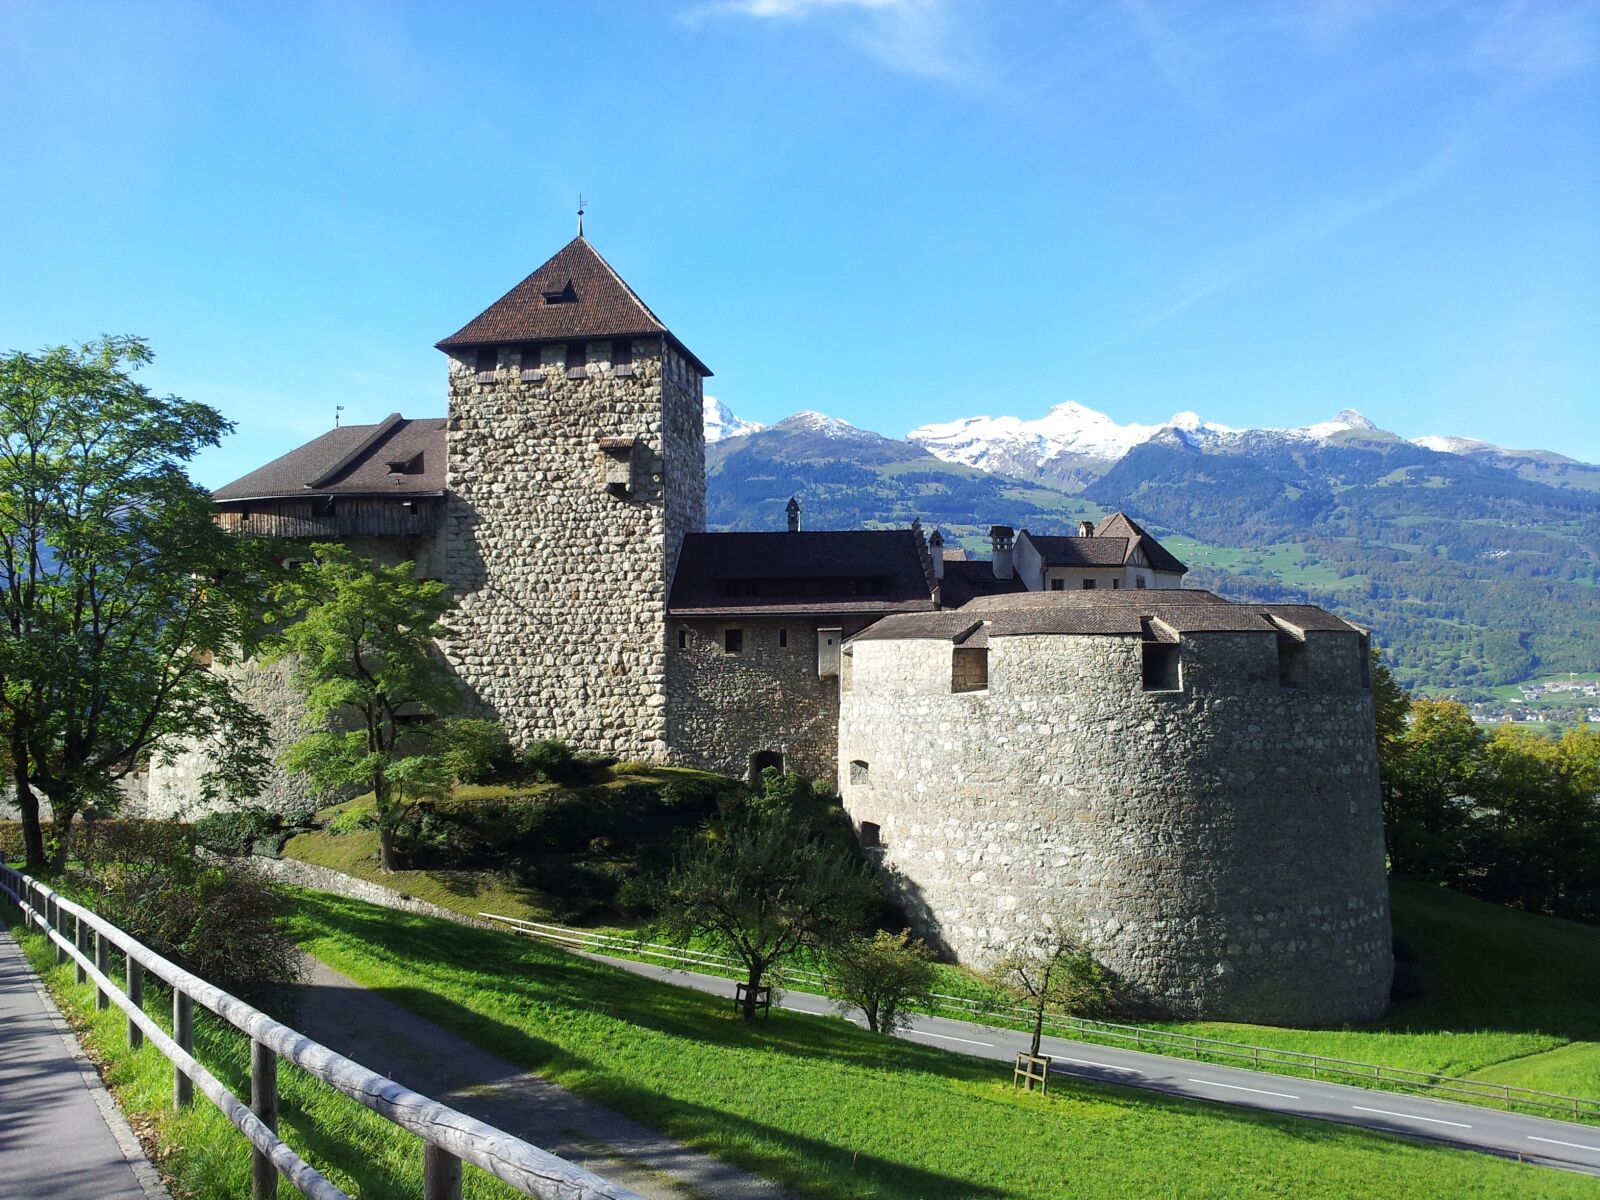 Samsung Galaxy Note sample photo. Lichtenstein castle, castle, europe photography